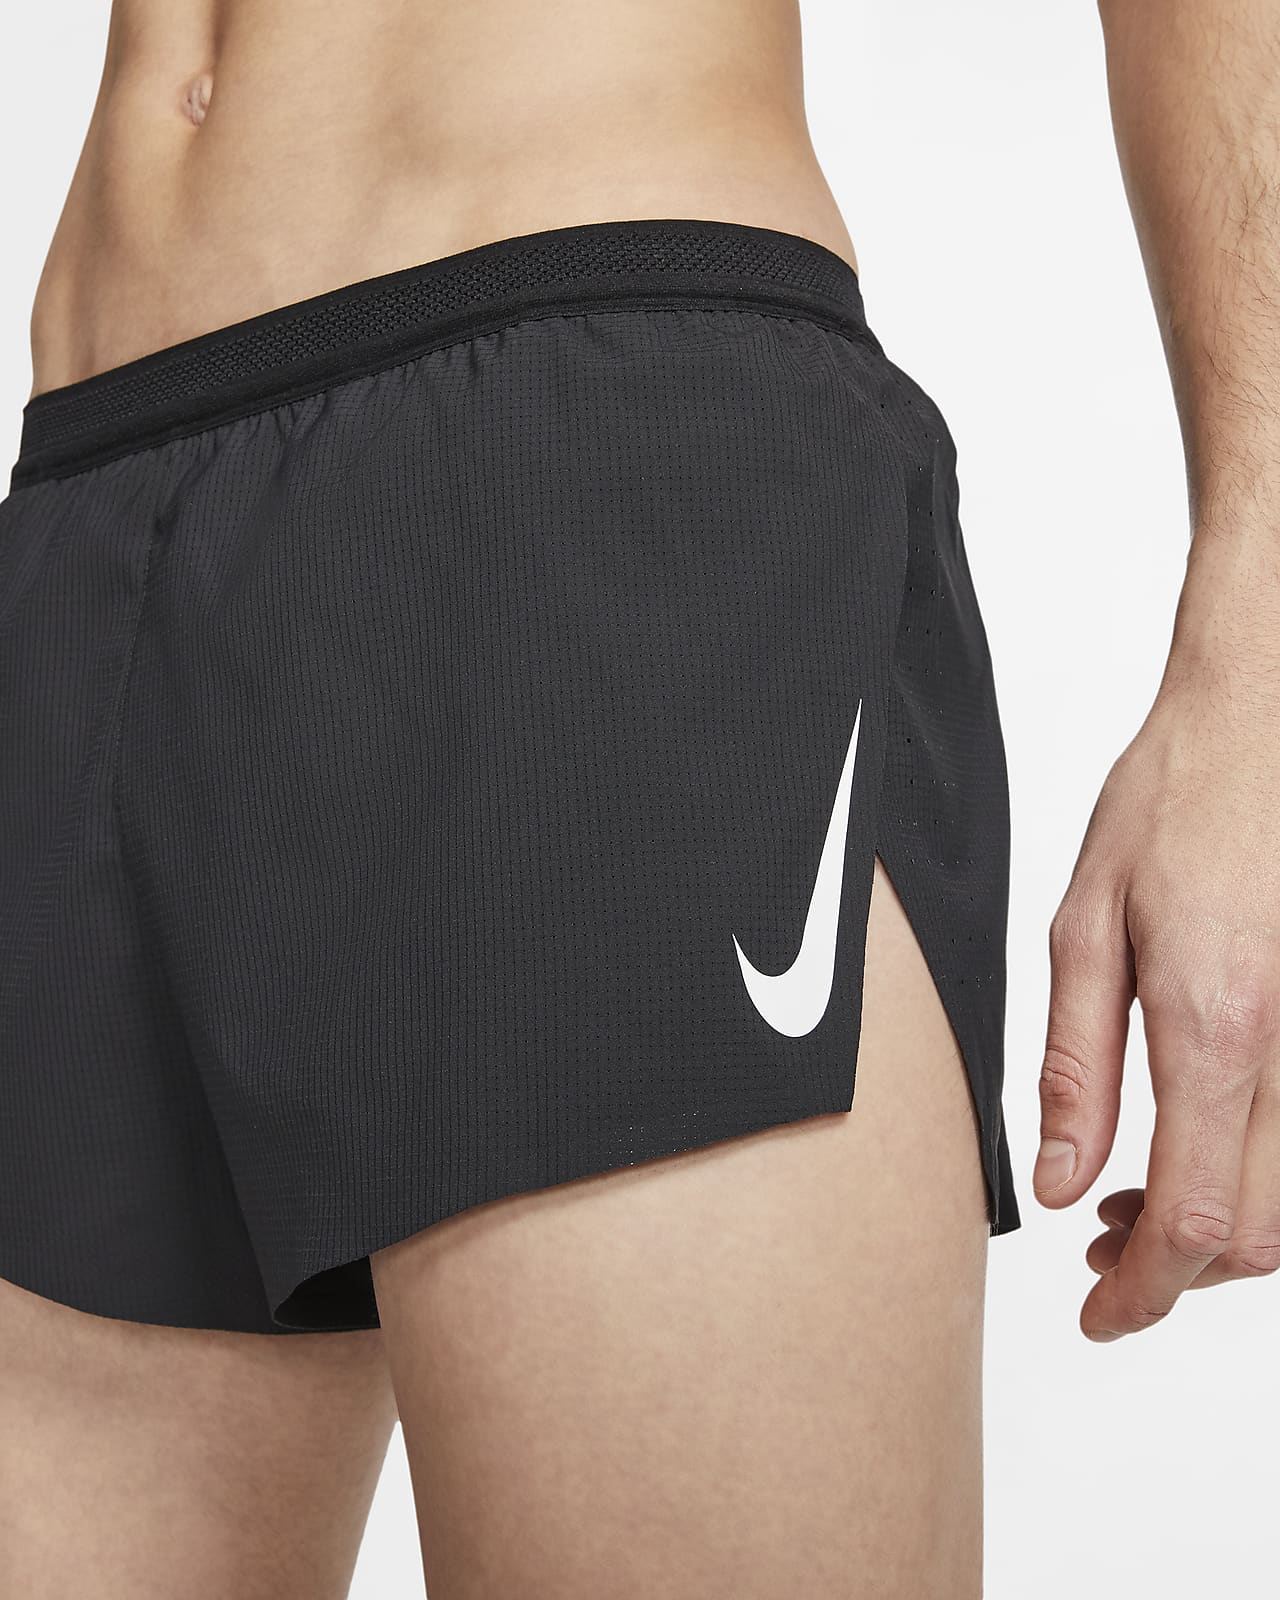 Nike Aeroswift 2 Running Shorts - Men's Medium ~ $80.00 CJ7837 010 Black